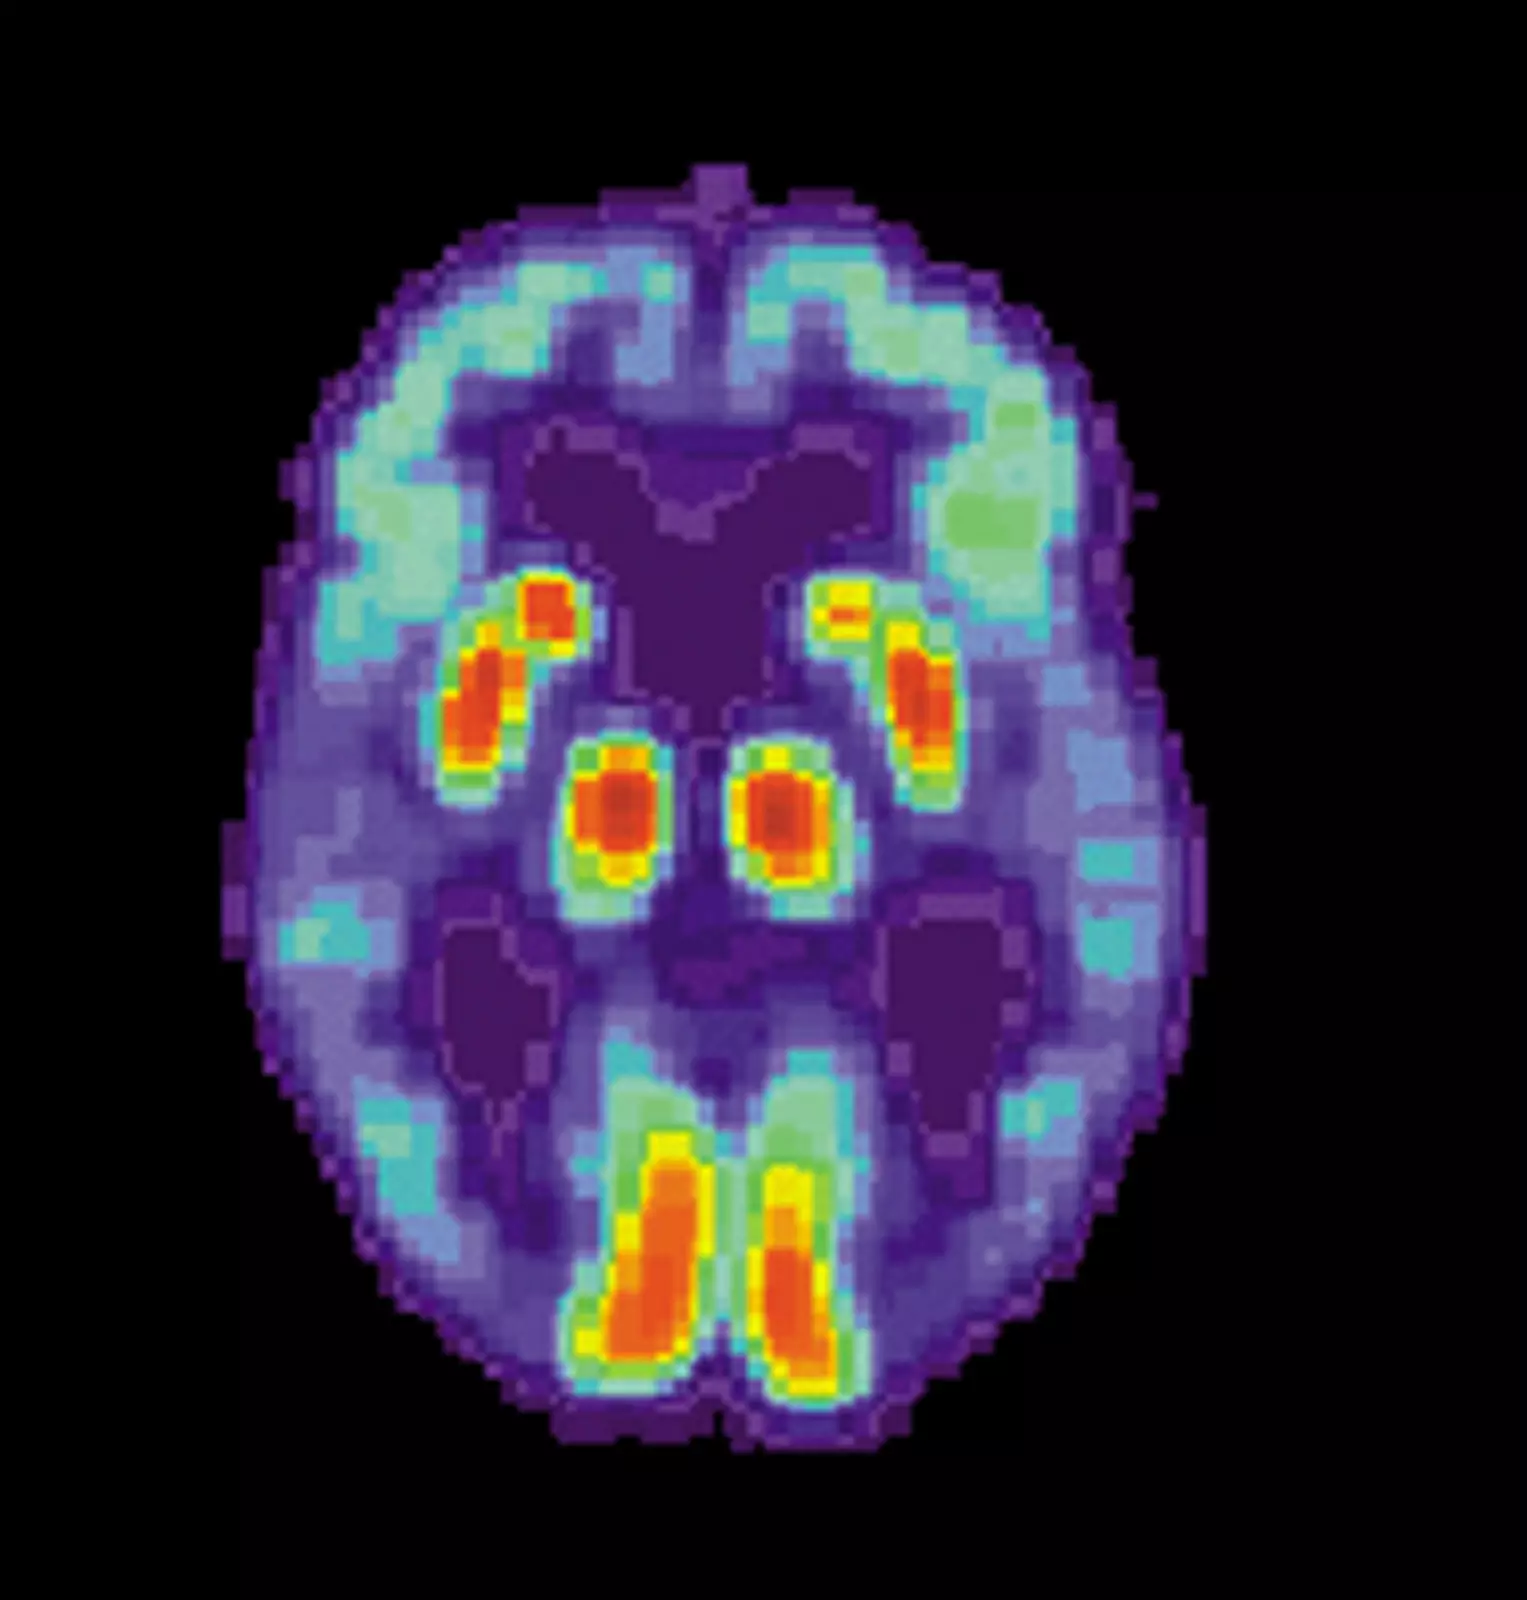 МРТ-снимок мозга человека с болезнью Альцгеймера.